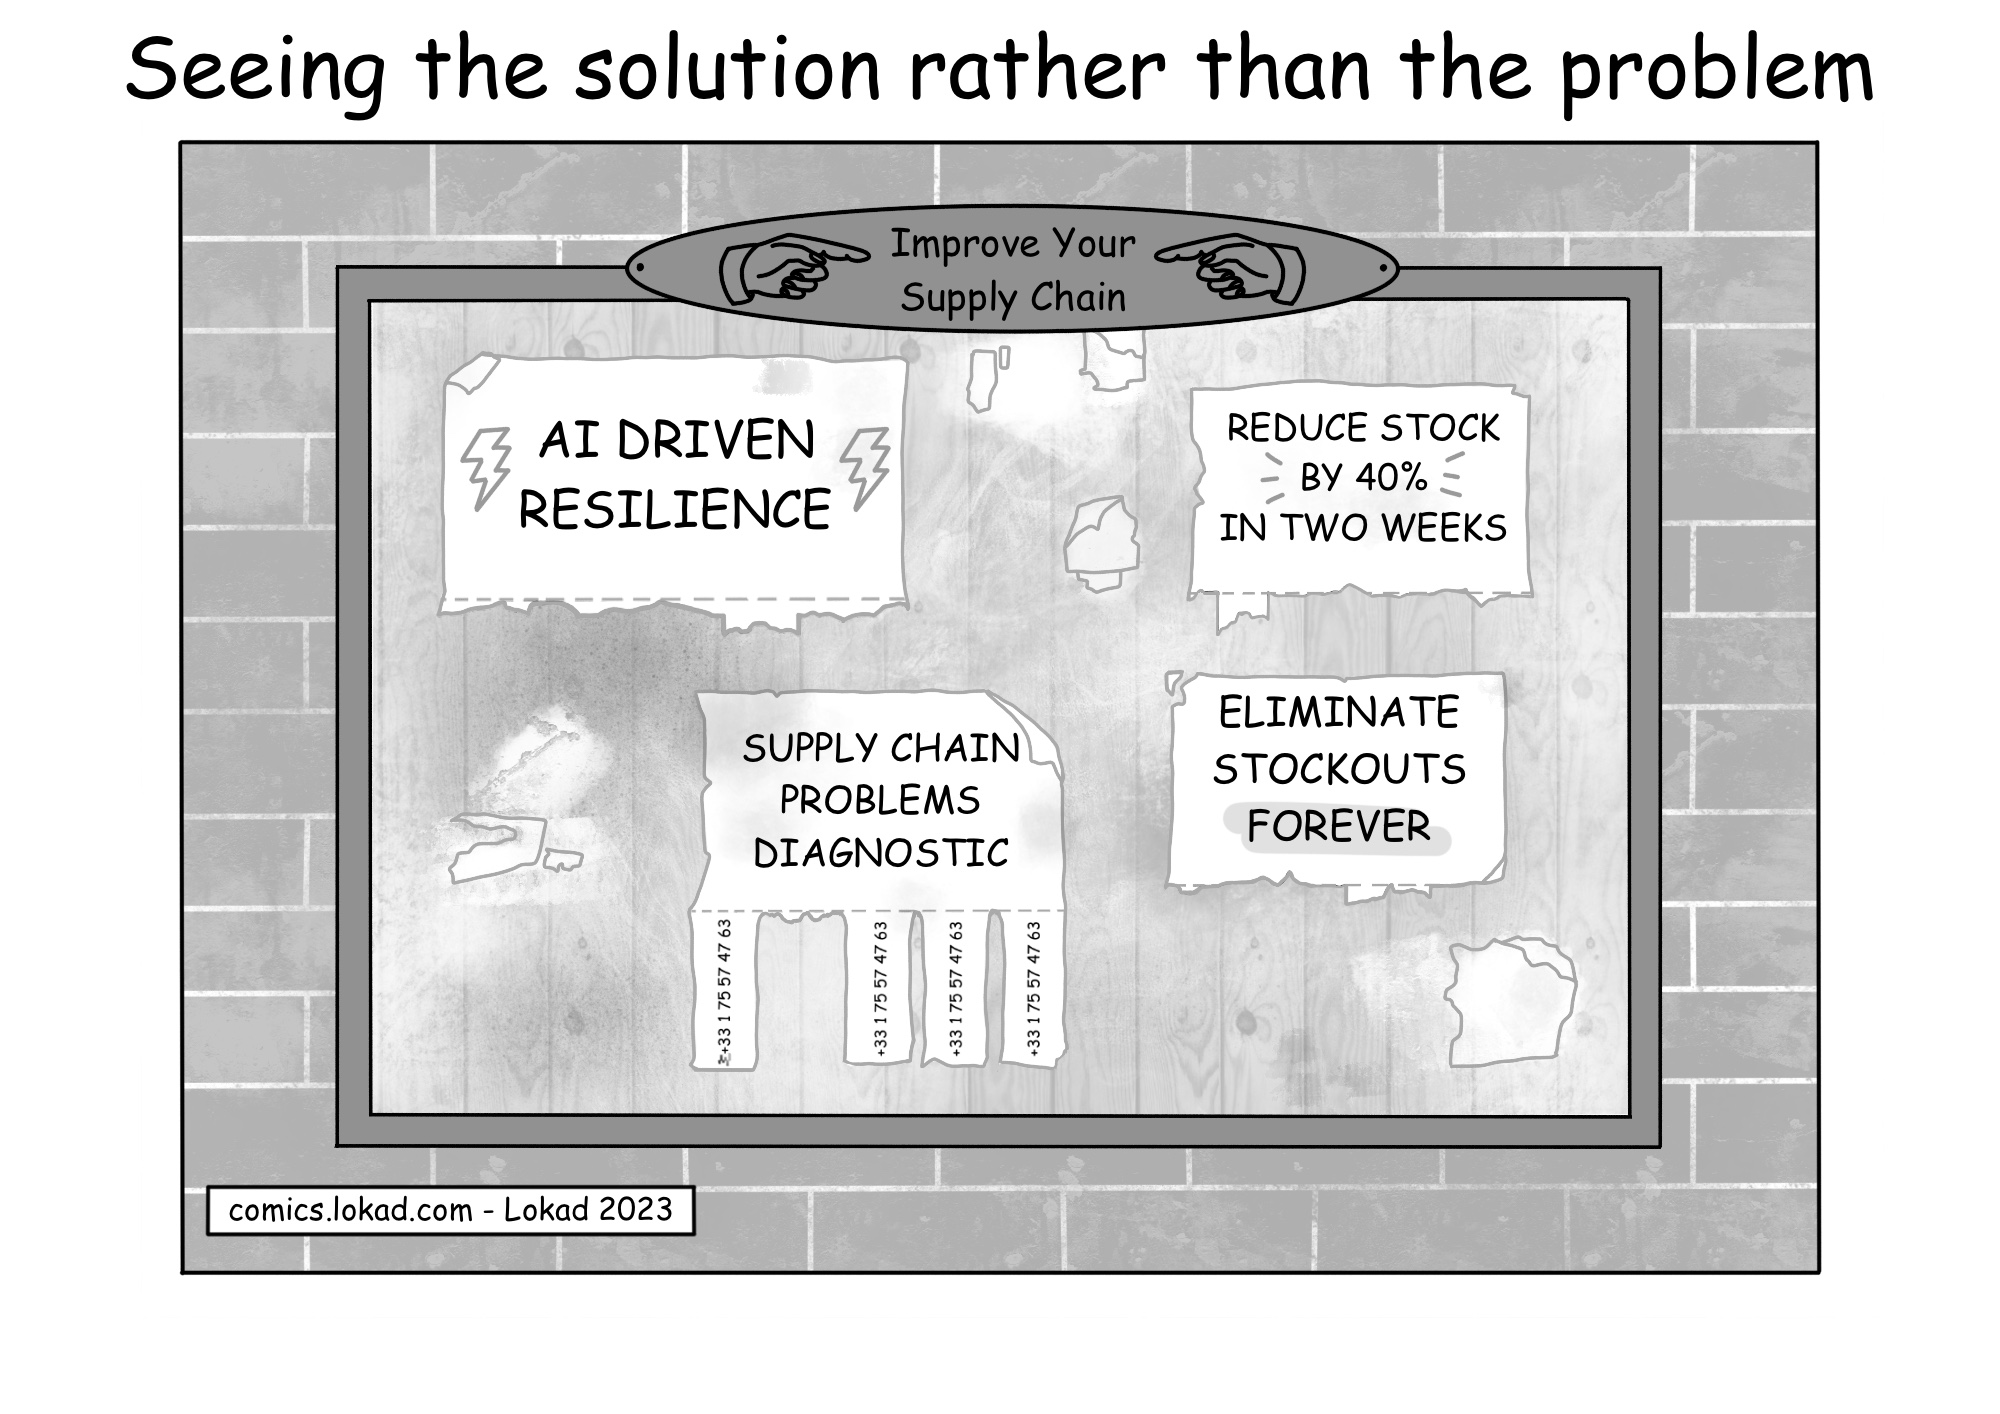 Comic aus Lokads Supply Chain-Serie mit dem Titel 'Die Lösung sehen statt das Problem'. Er zeigt eine Pinnwand mit verschiedenen optimistischen Anzeigen von Lieferanten, die Supply Chain-Lösungen wie 'KI-GESTÜTZTE WIDERSTANDSFÄHIGKEIT', 'LAGERBESTAND IN ZWEI WOCHEN UM 40% REDUZIEREN' und 'LAGERBESTANDSAUSFÄLLE FÜR IMMER BESEITIGEN' anbieten. Alle Anzeigen haben ihre Kontaktstreifen verloren, da sie abgerissen wurden. Im Gegensatz dazu hat eine andere Anzeige für 'DIAGNOSE VON SUPPLY CHAIN-PROBLEMEN' nur einen Streifen verloren, was die Diskrepanz zwischen diesen ehrgeizigen Behauptungen und dem offensichtlichen Desinteresse an der Untersuchung der zugrunde liegenden Probleme vor dem Versuch, sie zu lösen, verdeutlicht.